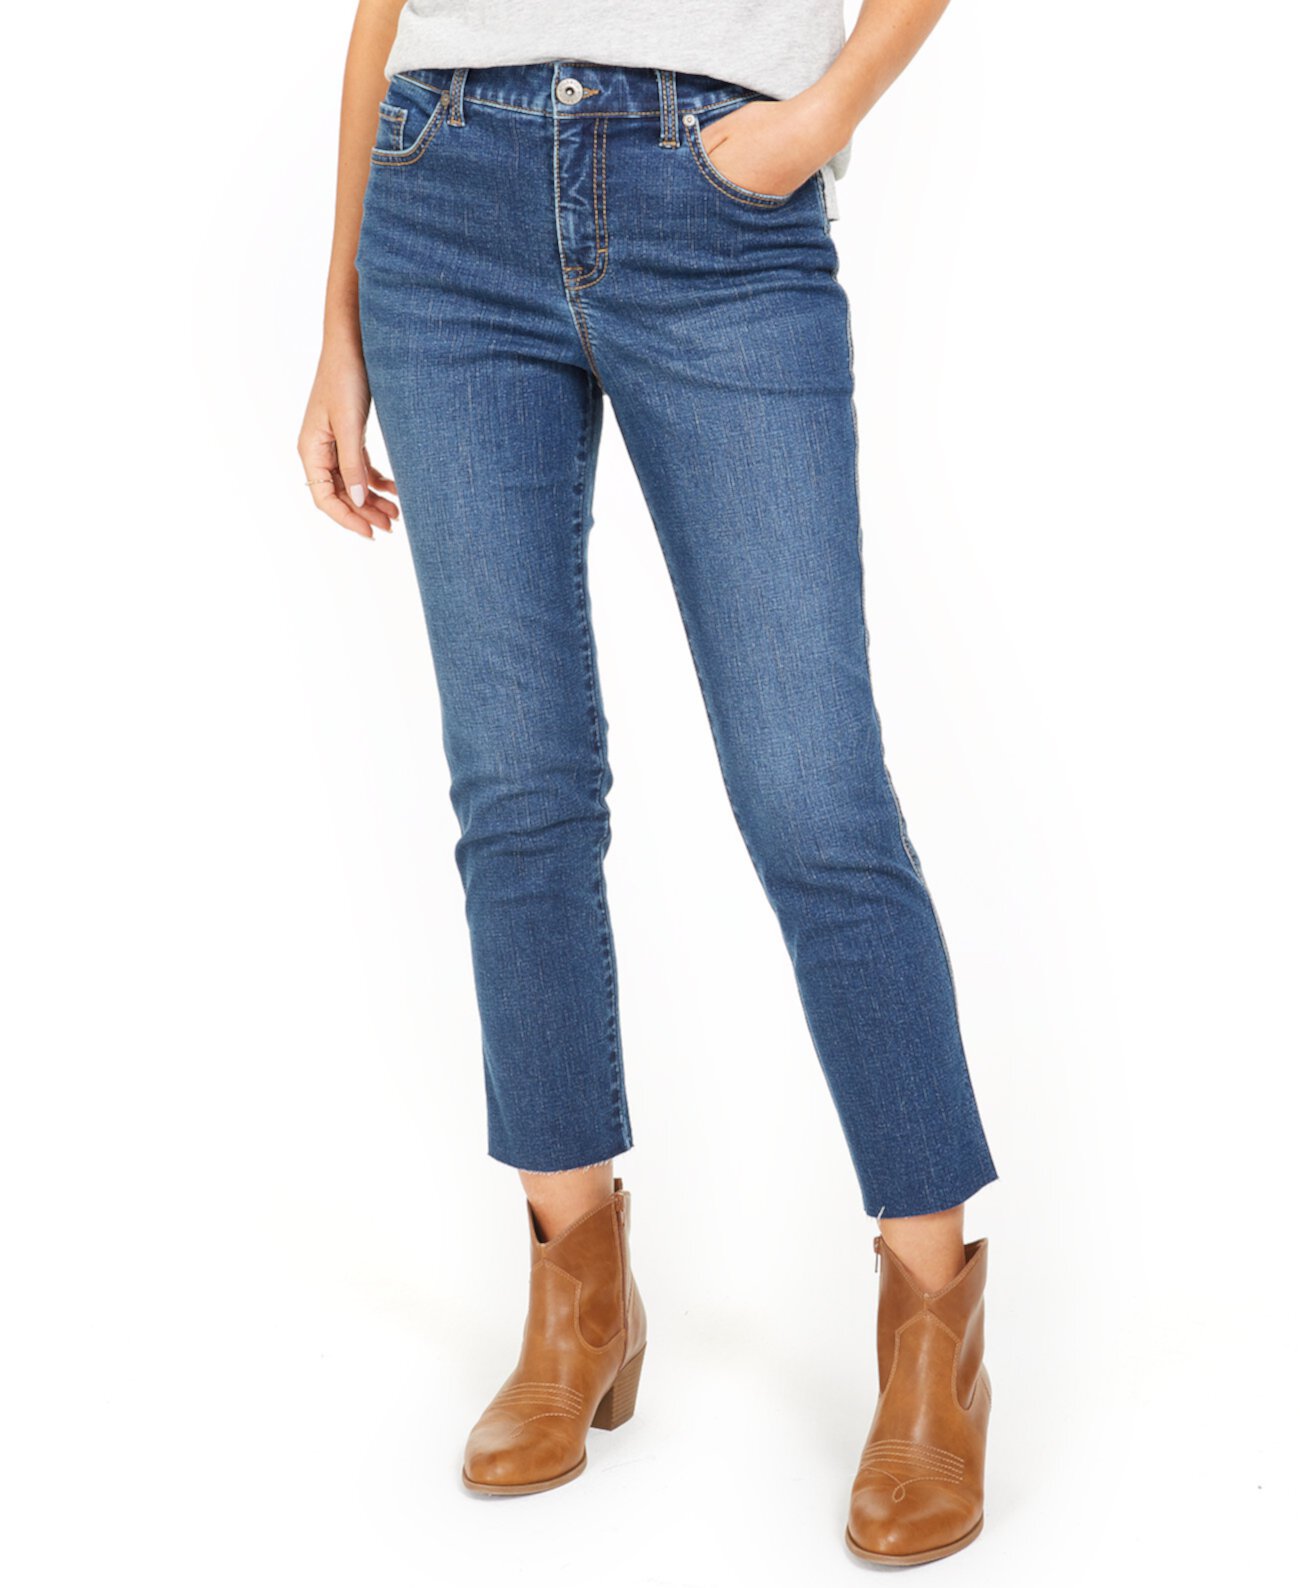 Укороченные джинсовые джинсы с прямыми ногами, созданные для Macy's Style & Co